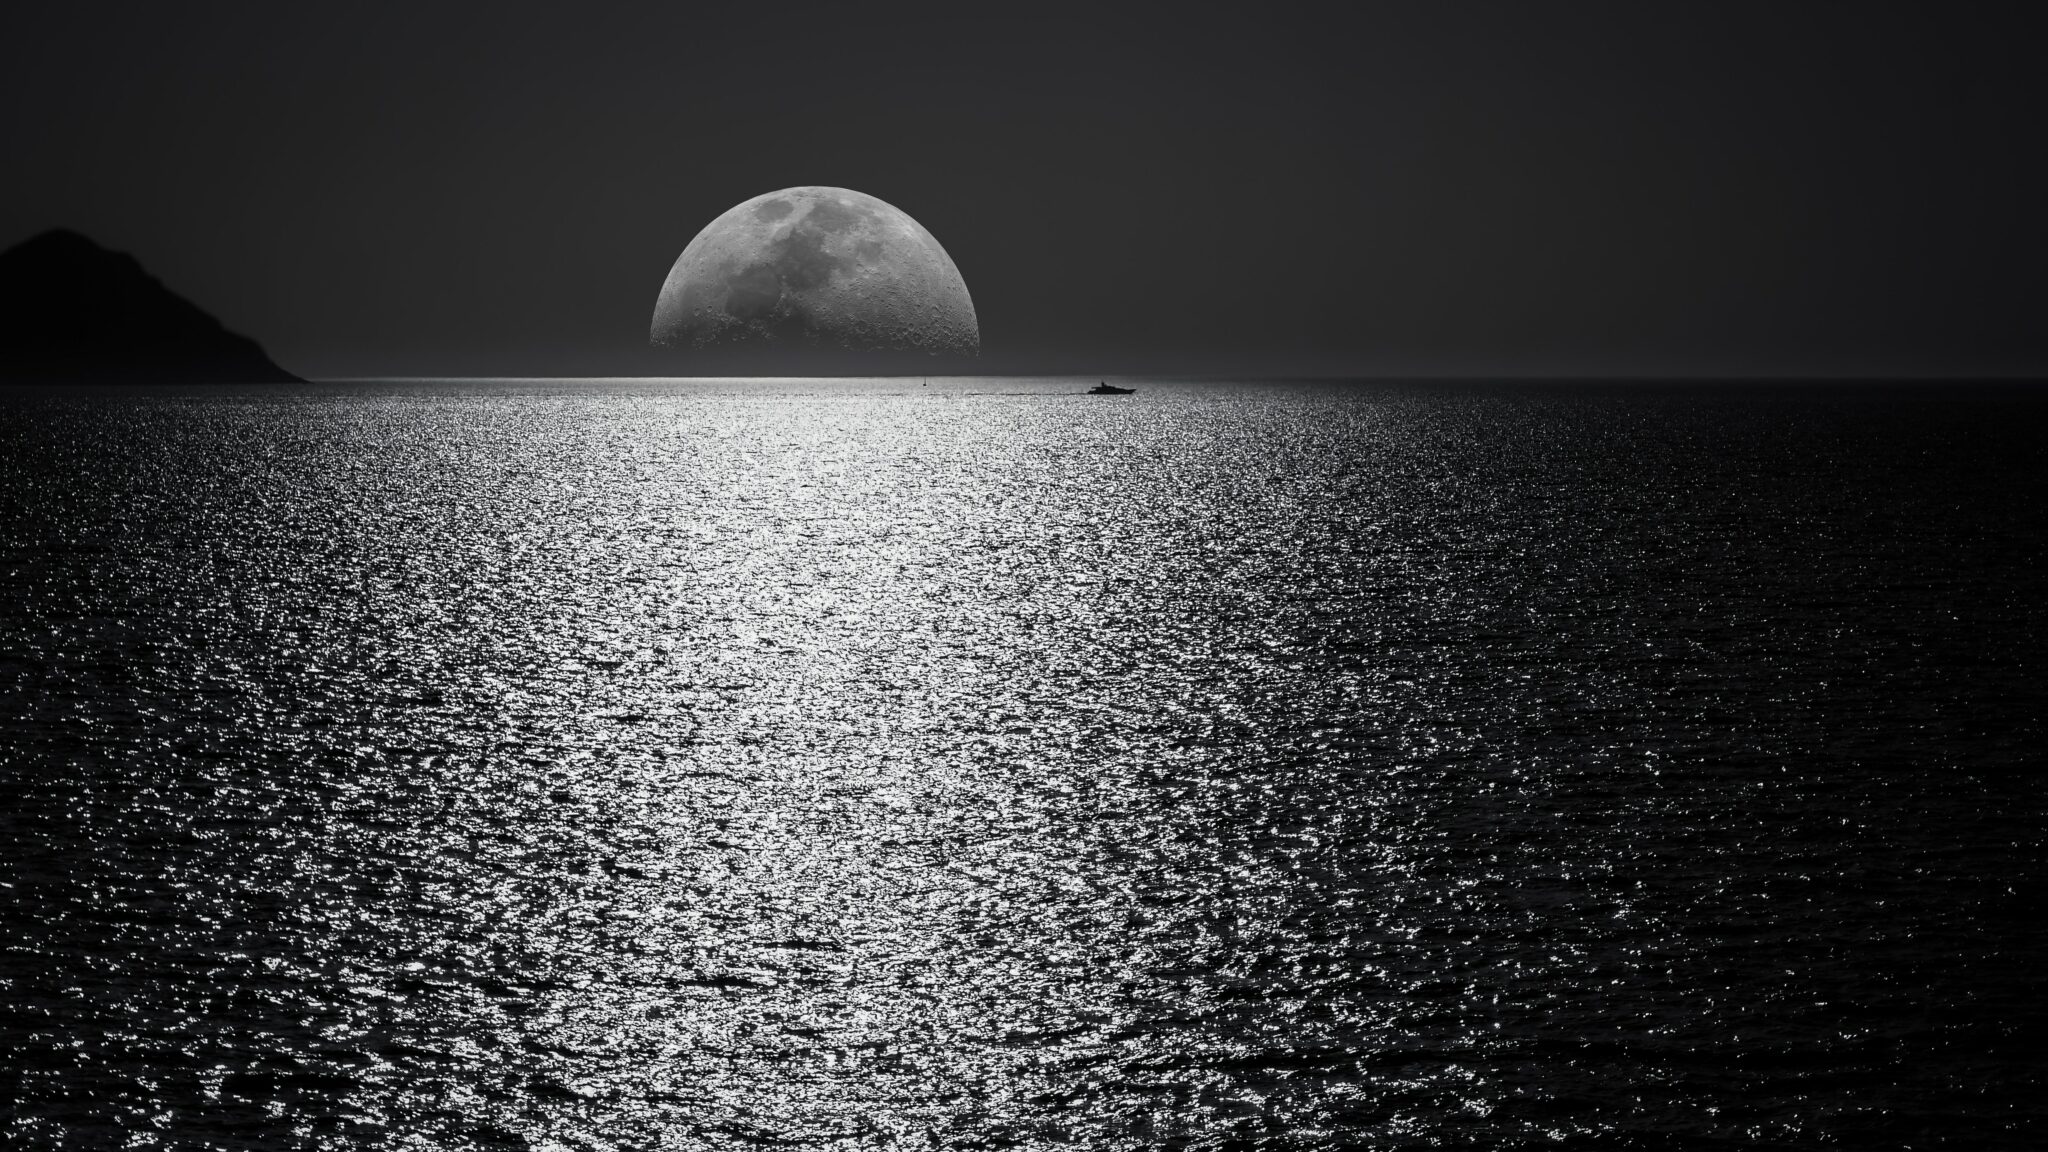 Illustration de l’émission STREAM n°9, qui s’intitule : Comment j’ai changé de paradigme. Il s’agit de la photo d’un coucher de lune, de nuit, en bord de mer et en noir et blanc.